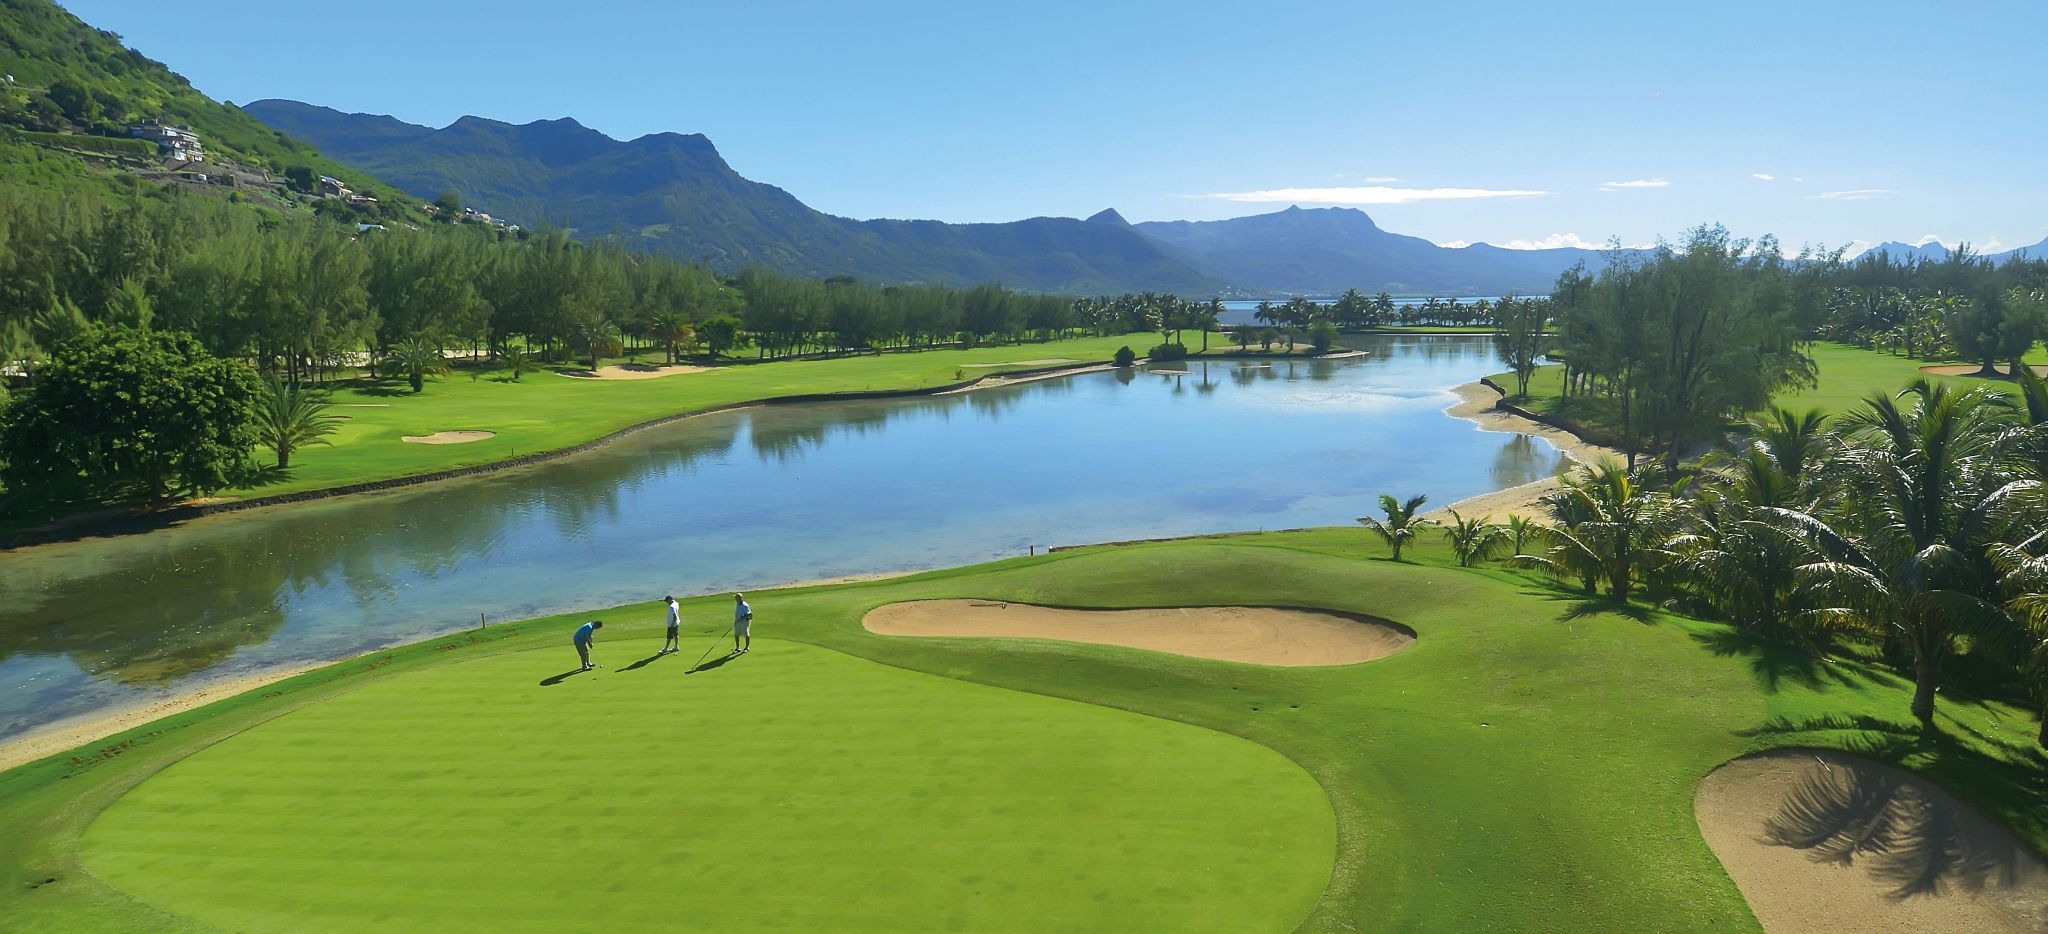 Golfplatz mit großem See, Mauritius